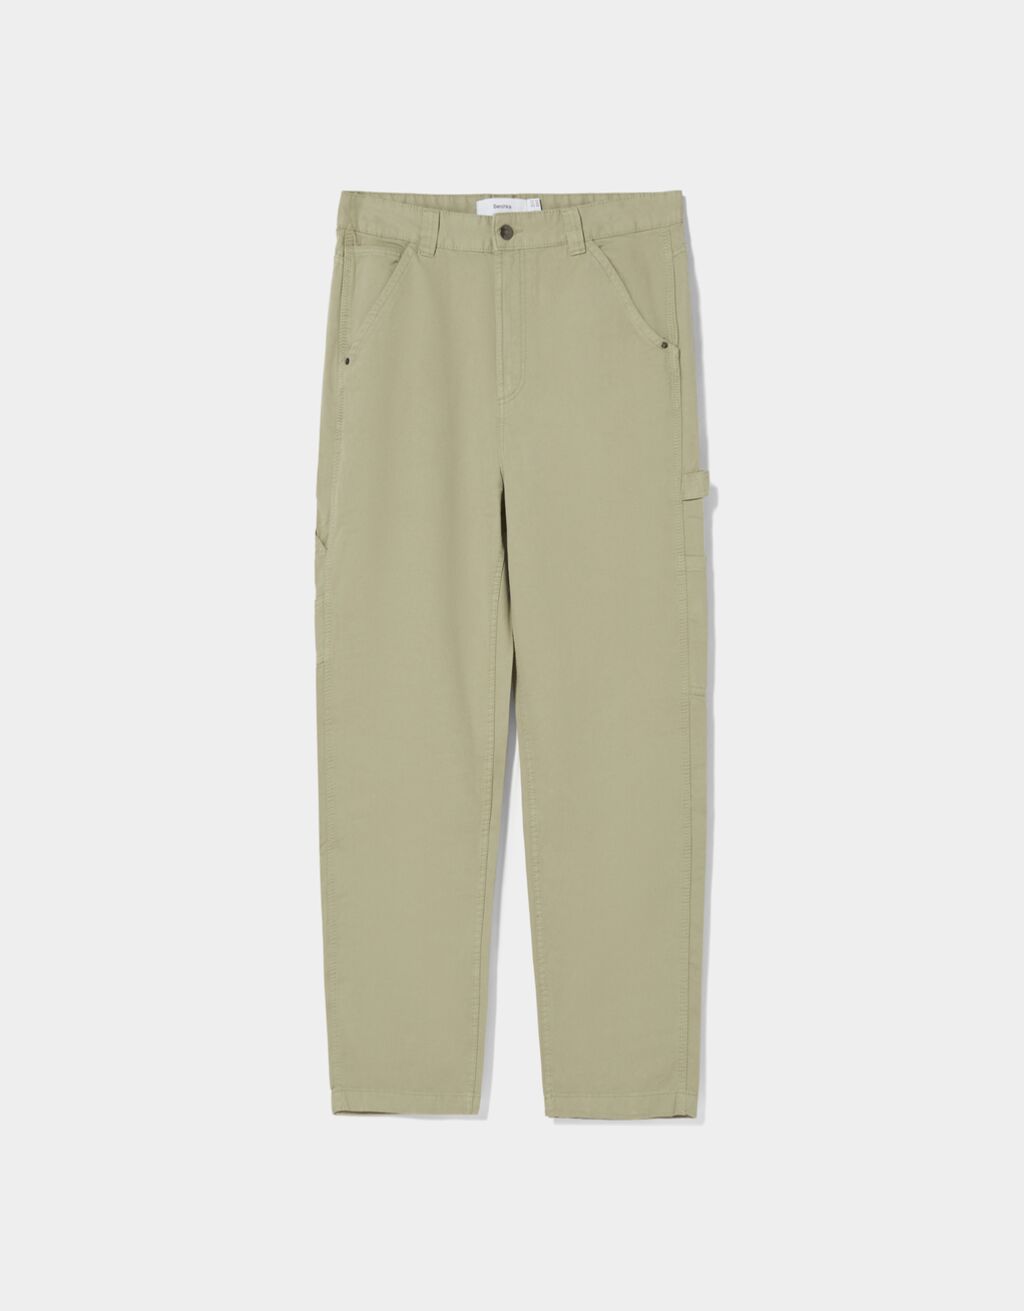 Wide-leg cotton carpenter trousers